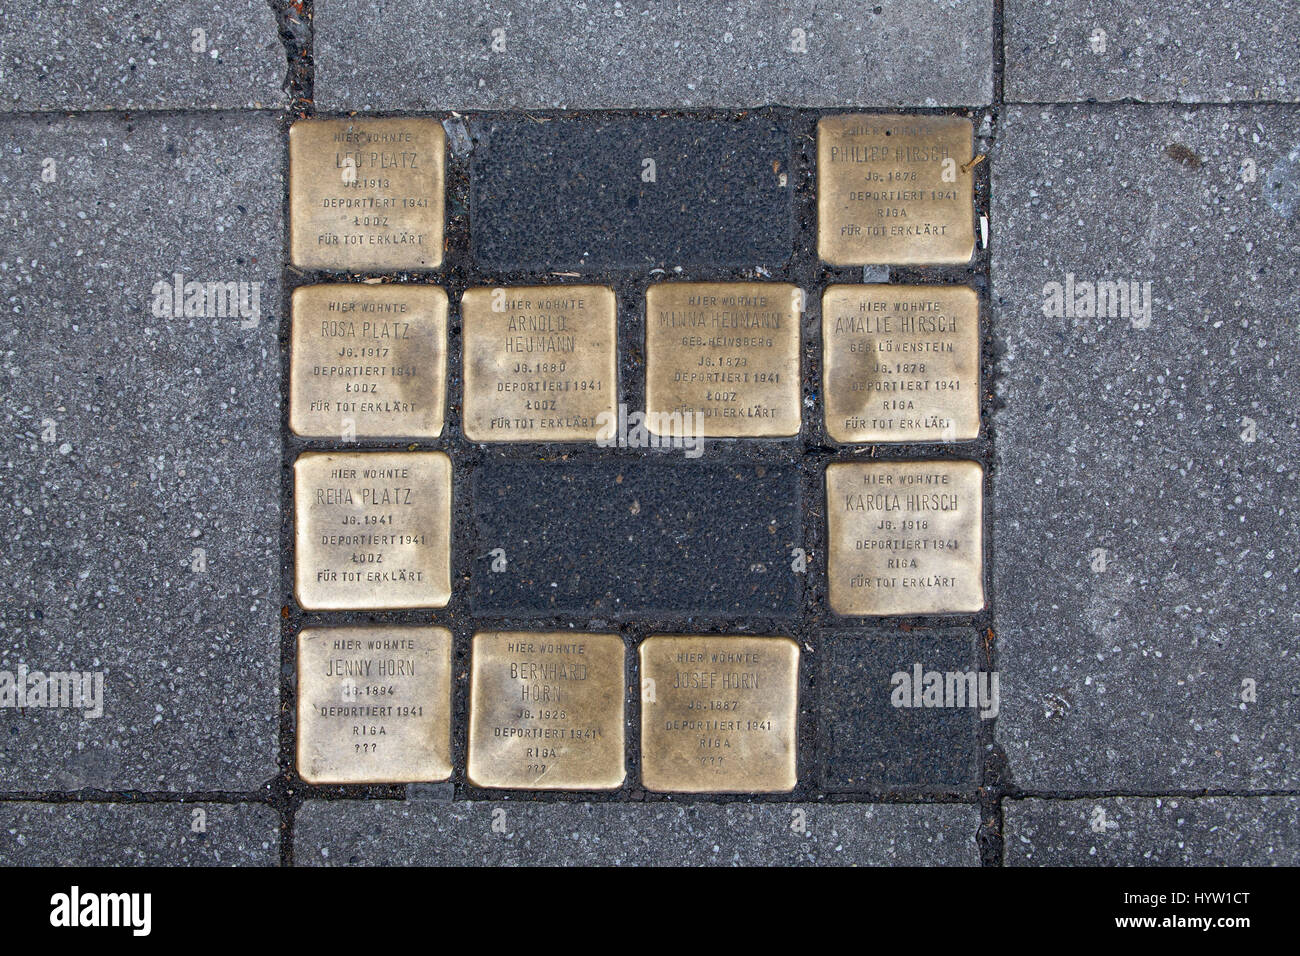 Deutschland, Köln, Stolpersteine (Stolpersteine) durch den Künstler Gunter Demnig. Die Stones Gedenken der Opfer des Nationalsozialismus (NS-Zeit). Stockfoto